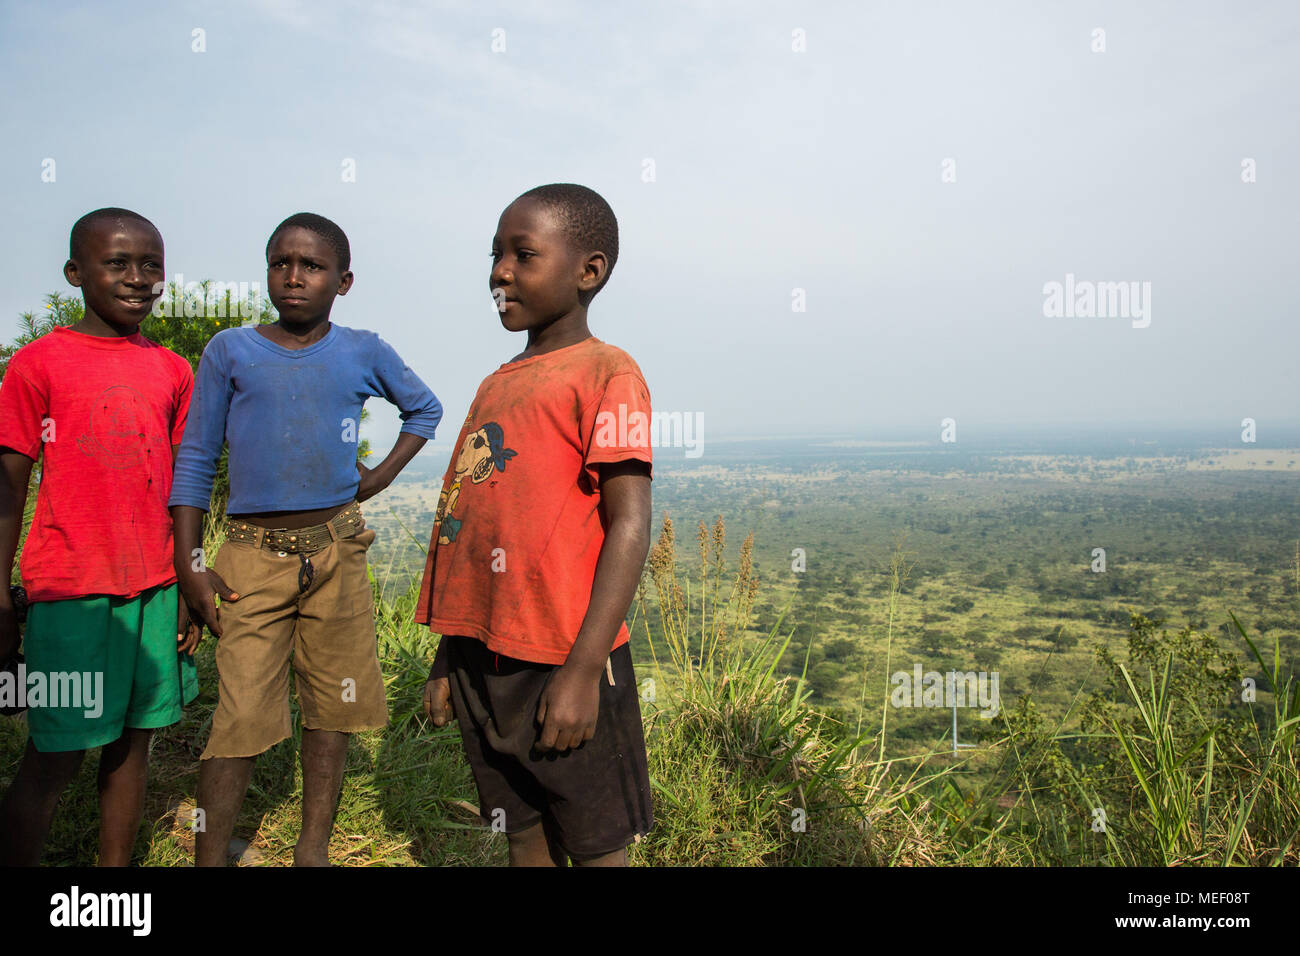 3 children in nature, Uganda Stock Photo